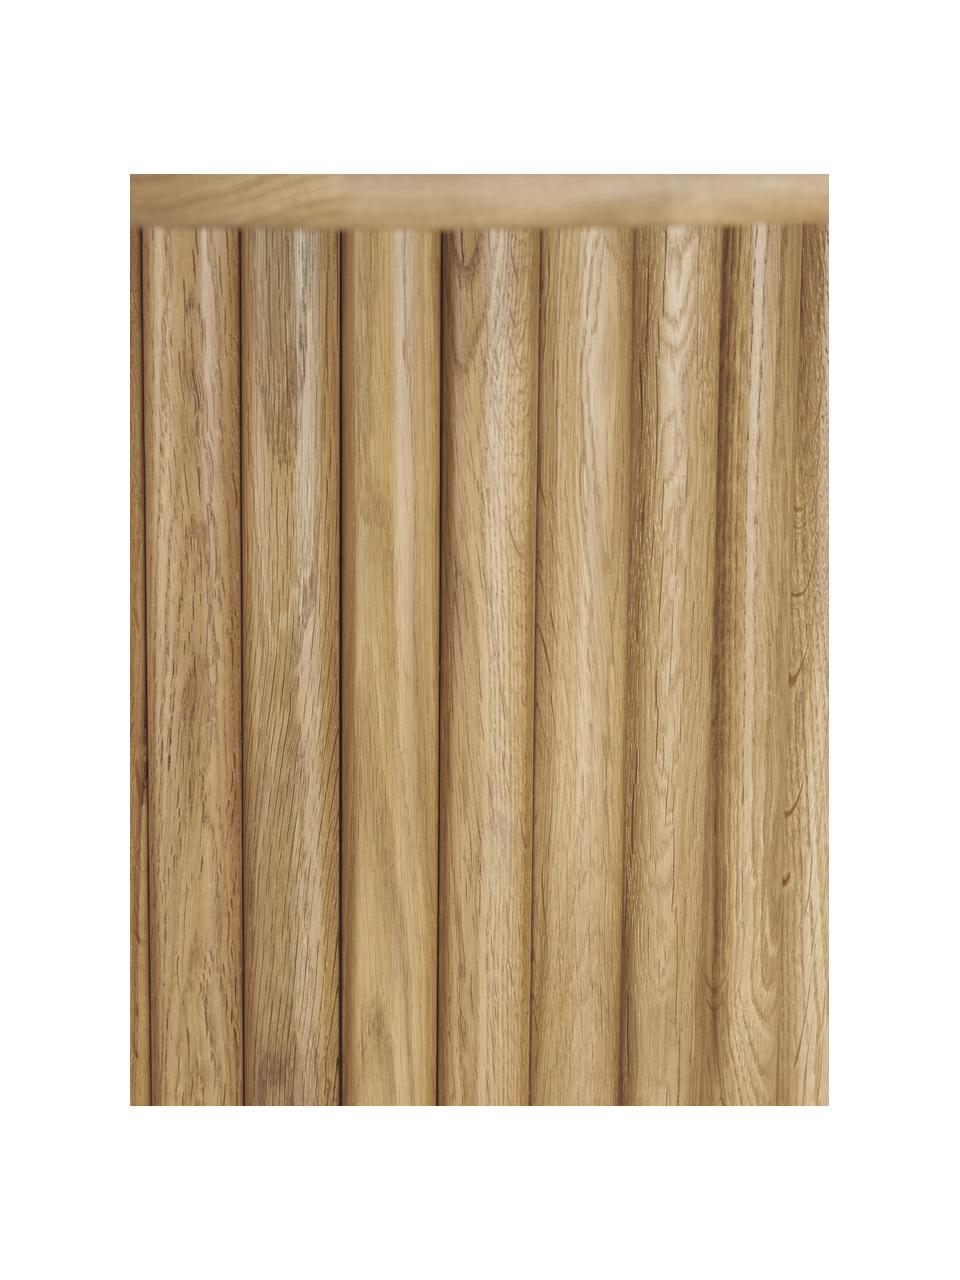 Runder Holz-Esstisch Janina, Ø 110 cm, Massives Eichenholz, Mitteldichte Holzfaserplatte (MDF), lackiert, Braun, Ø 110 x H 75 cm